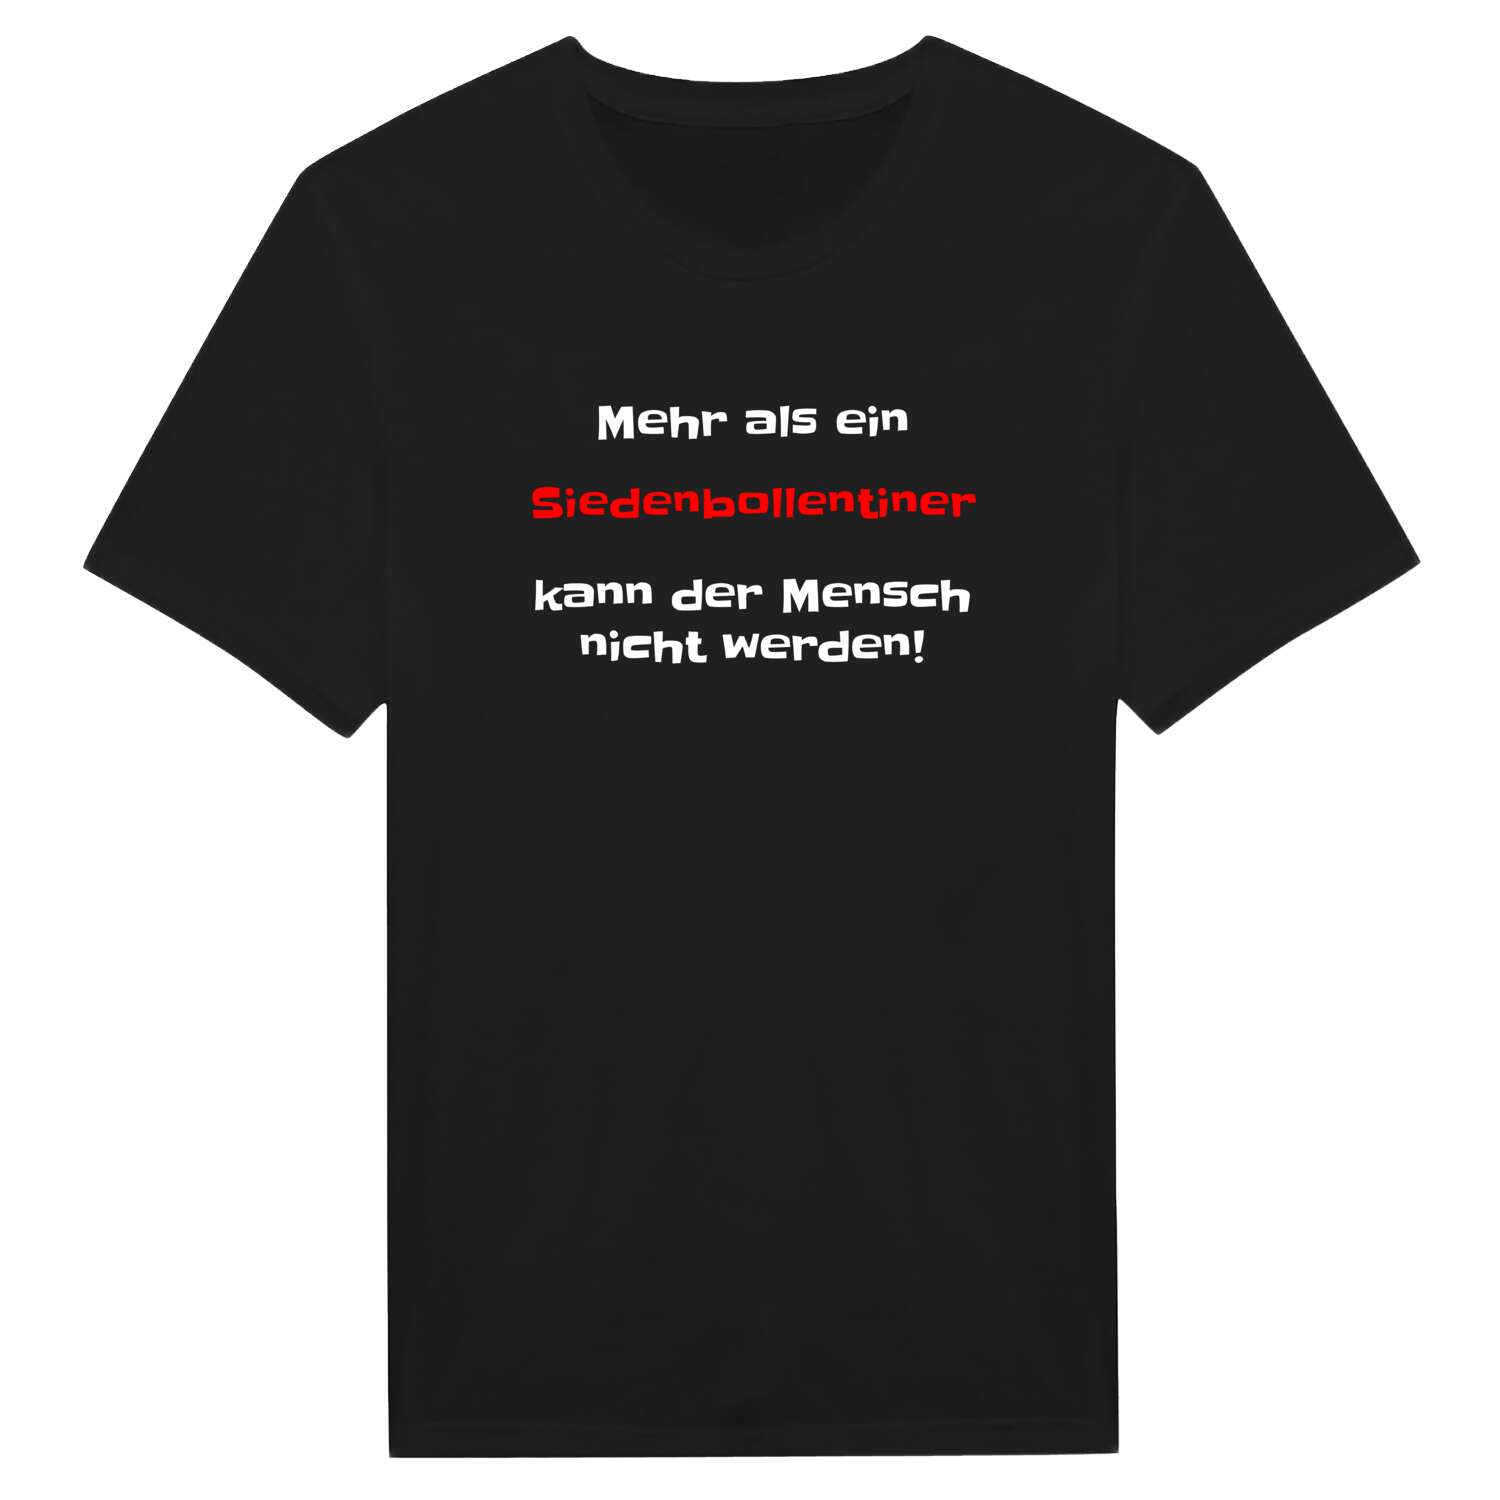 Siedenbollentin T-Shirt »Mehr als ein«